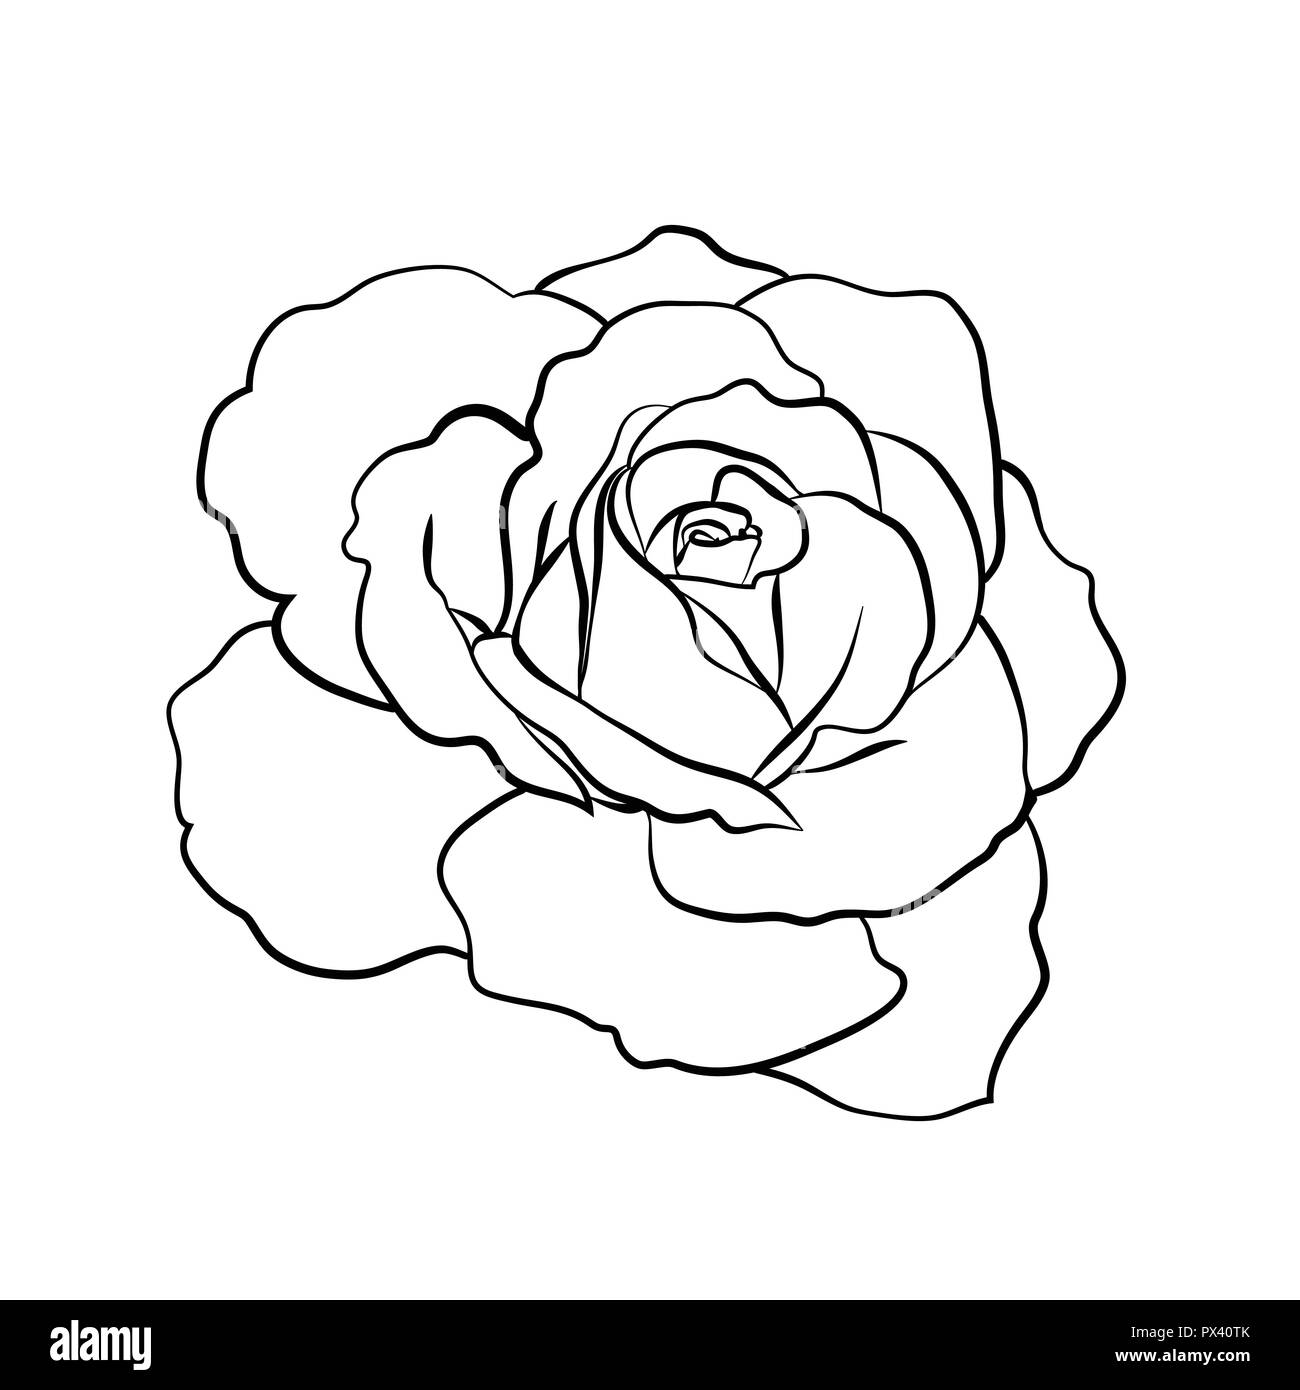 Croquis de Rose sur fond blanc Illustration de Vecteur